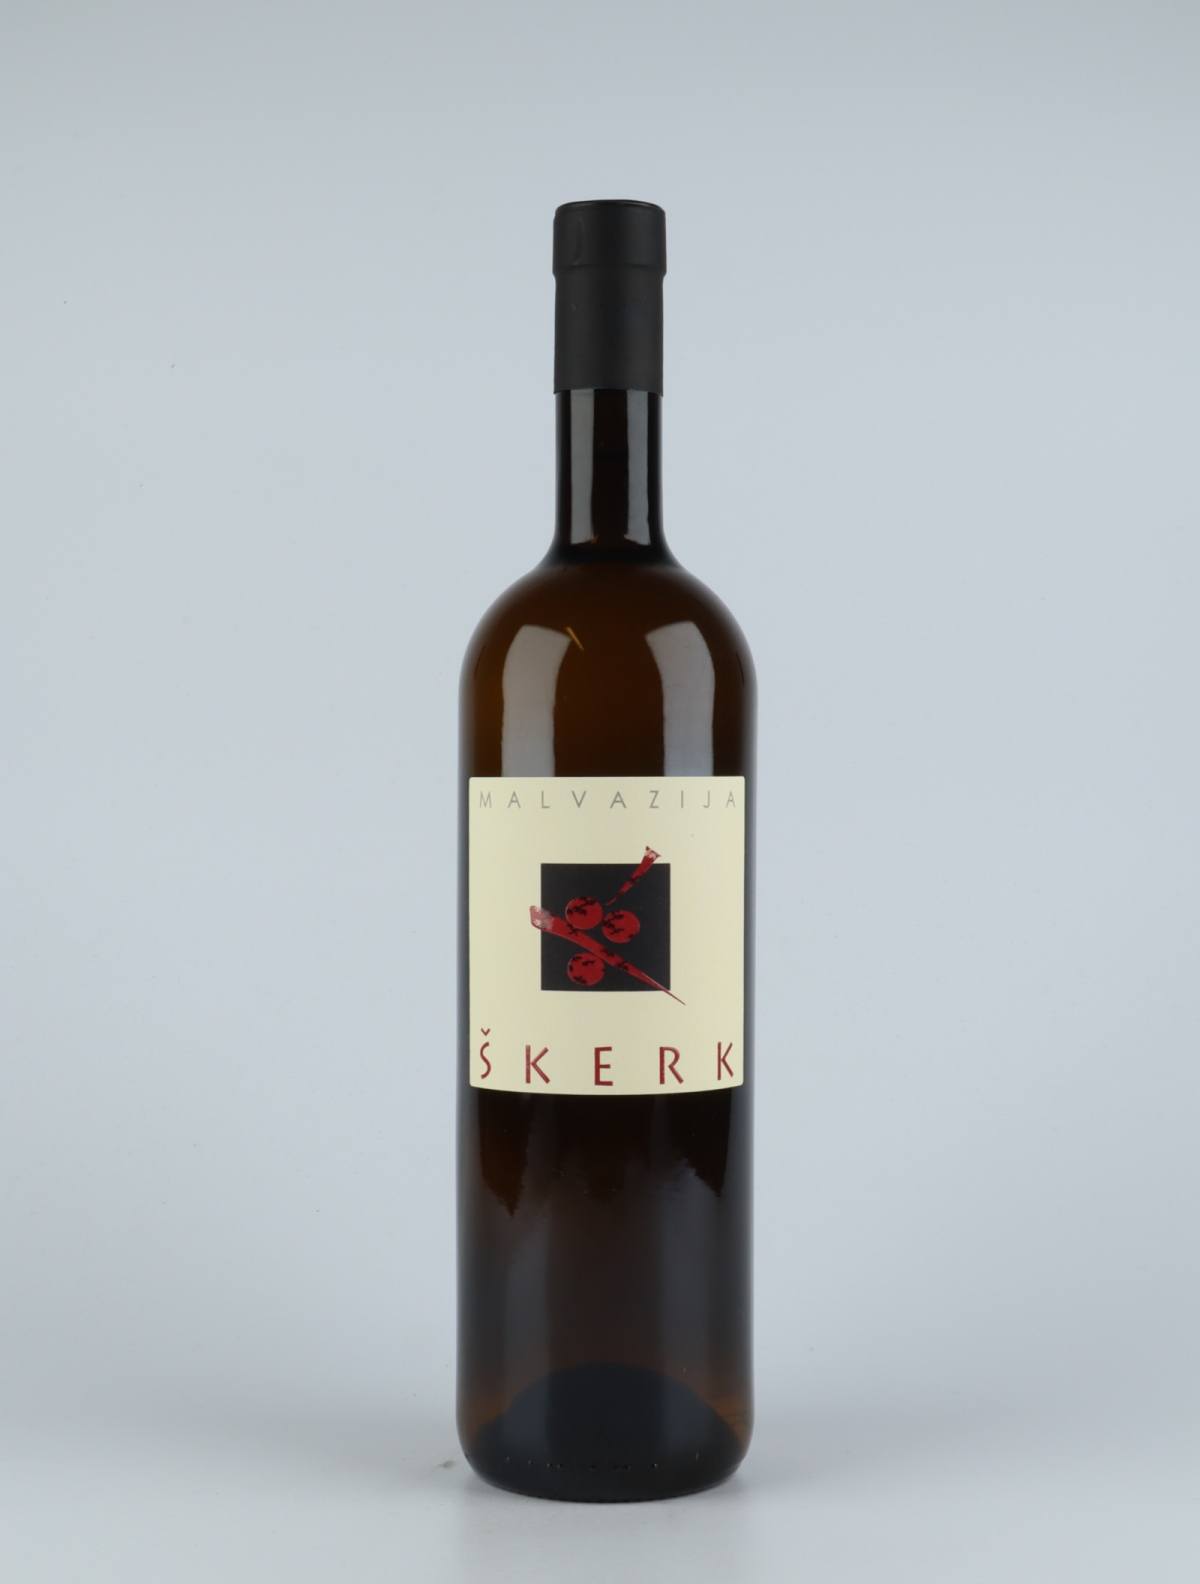 En flaske 2018 Malvazija Orange vin fra Skerk, Friuli i Italien